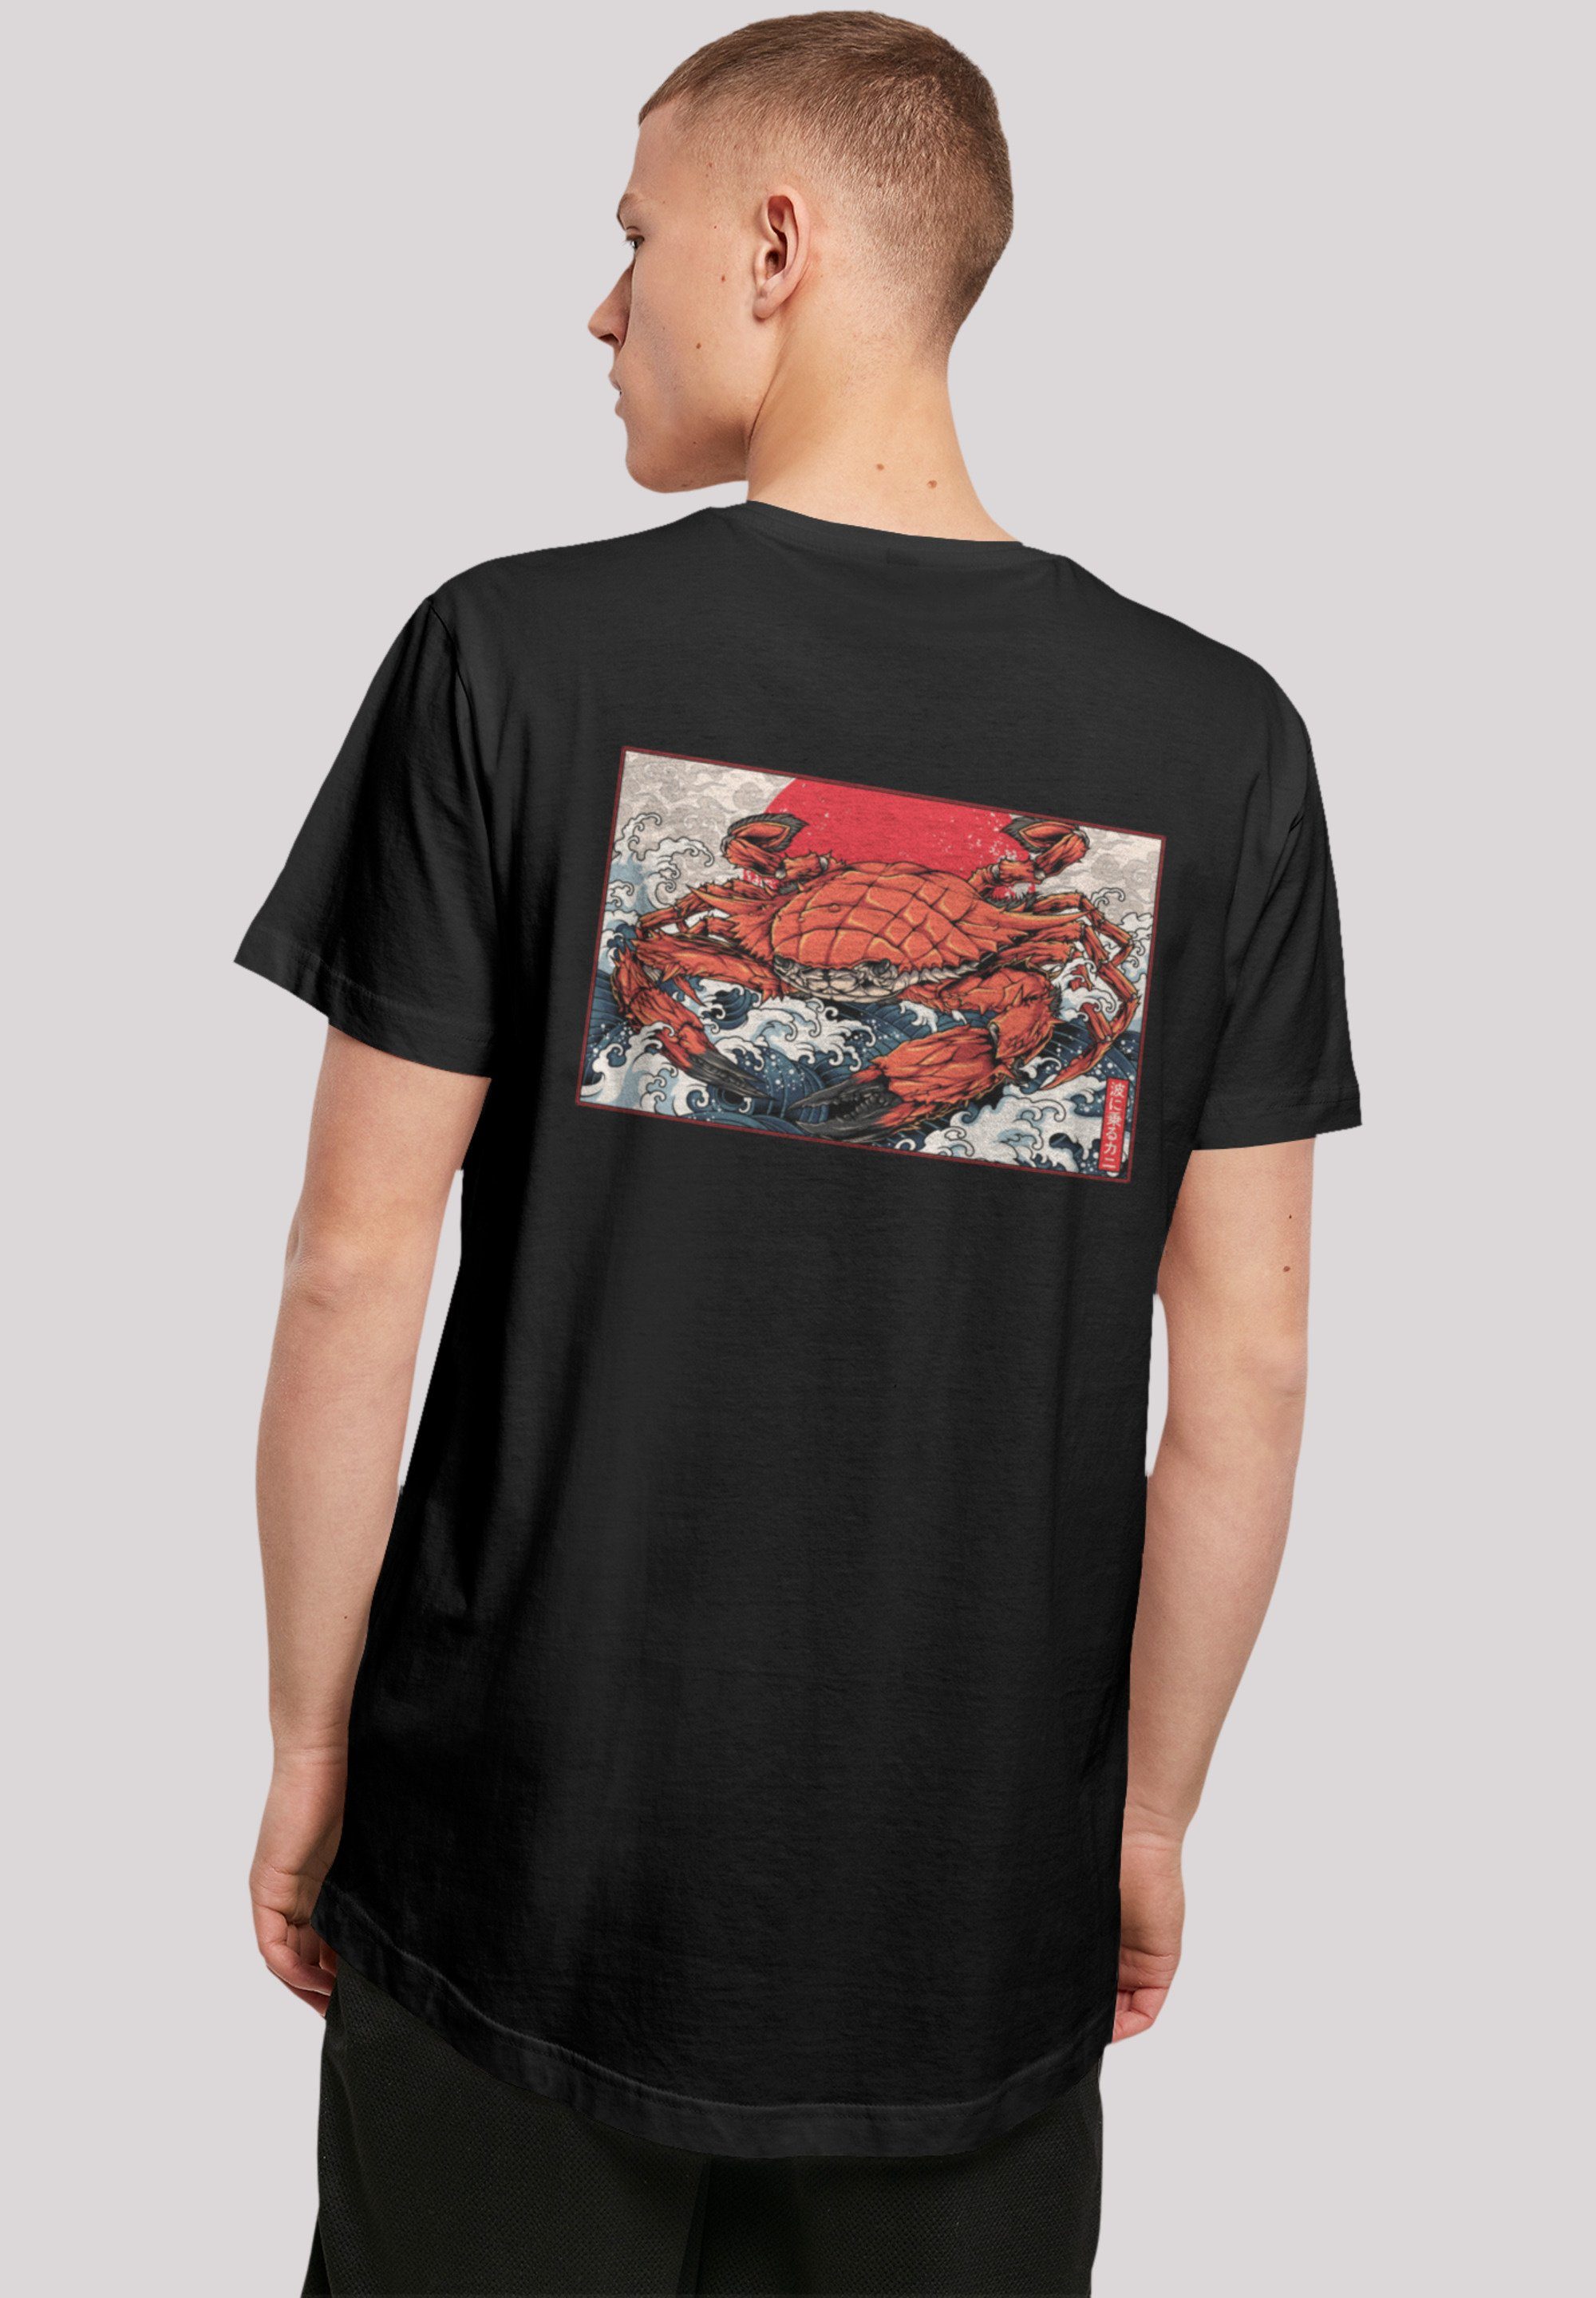 T-Shirt Welle Sehr Baumwollstoff Crab hohem mit Japan F4NT4STIC Print, Tragekomfort weicher